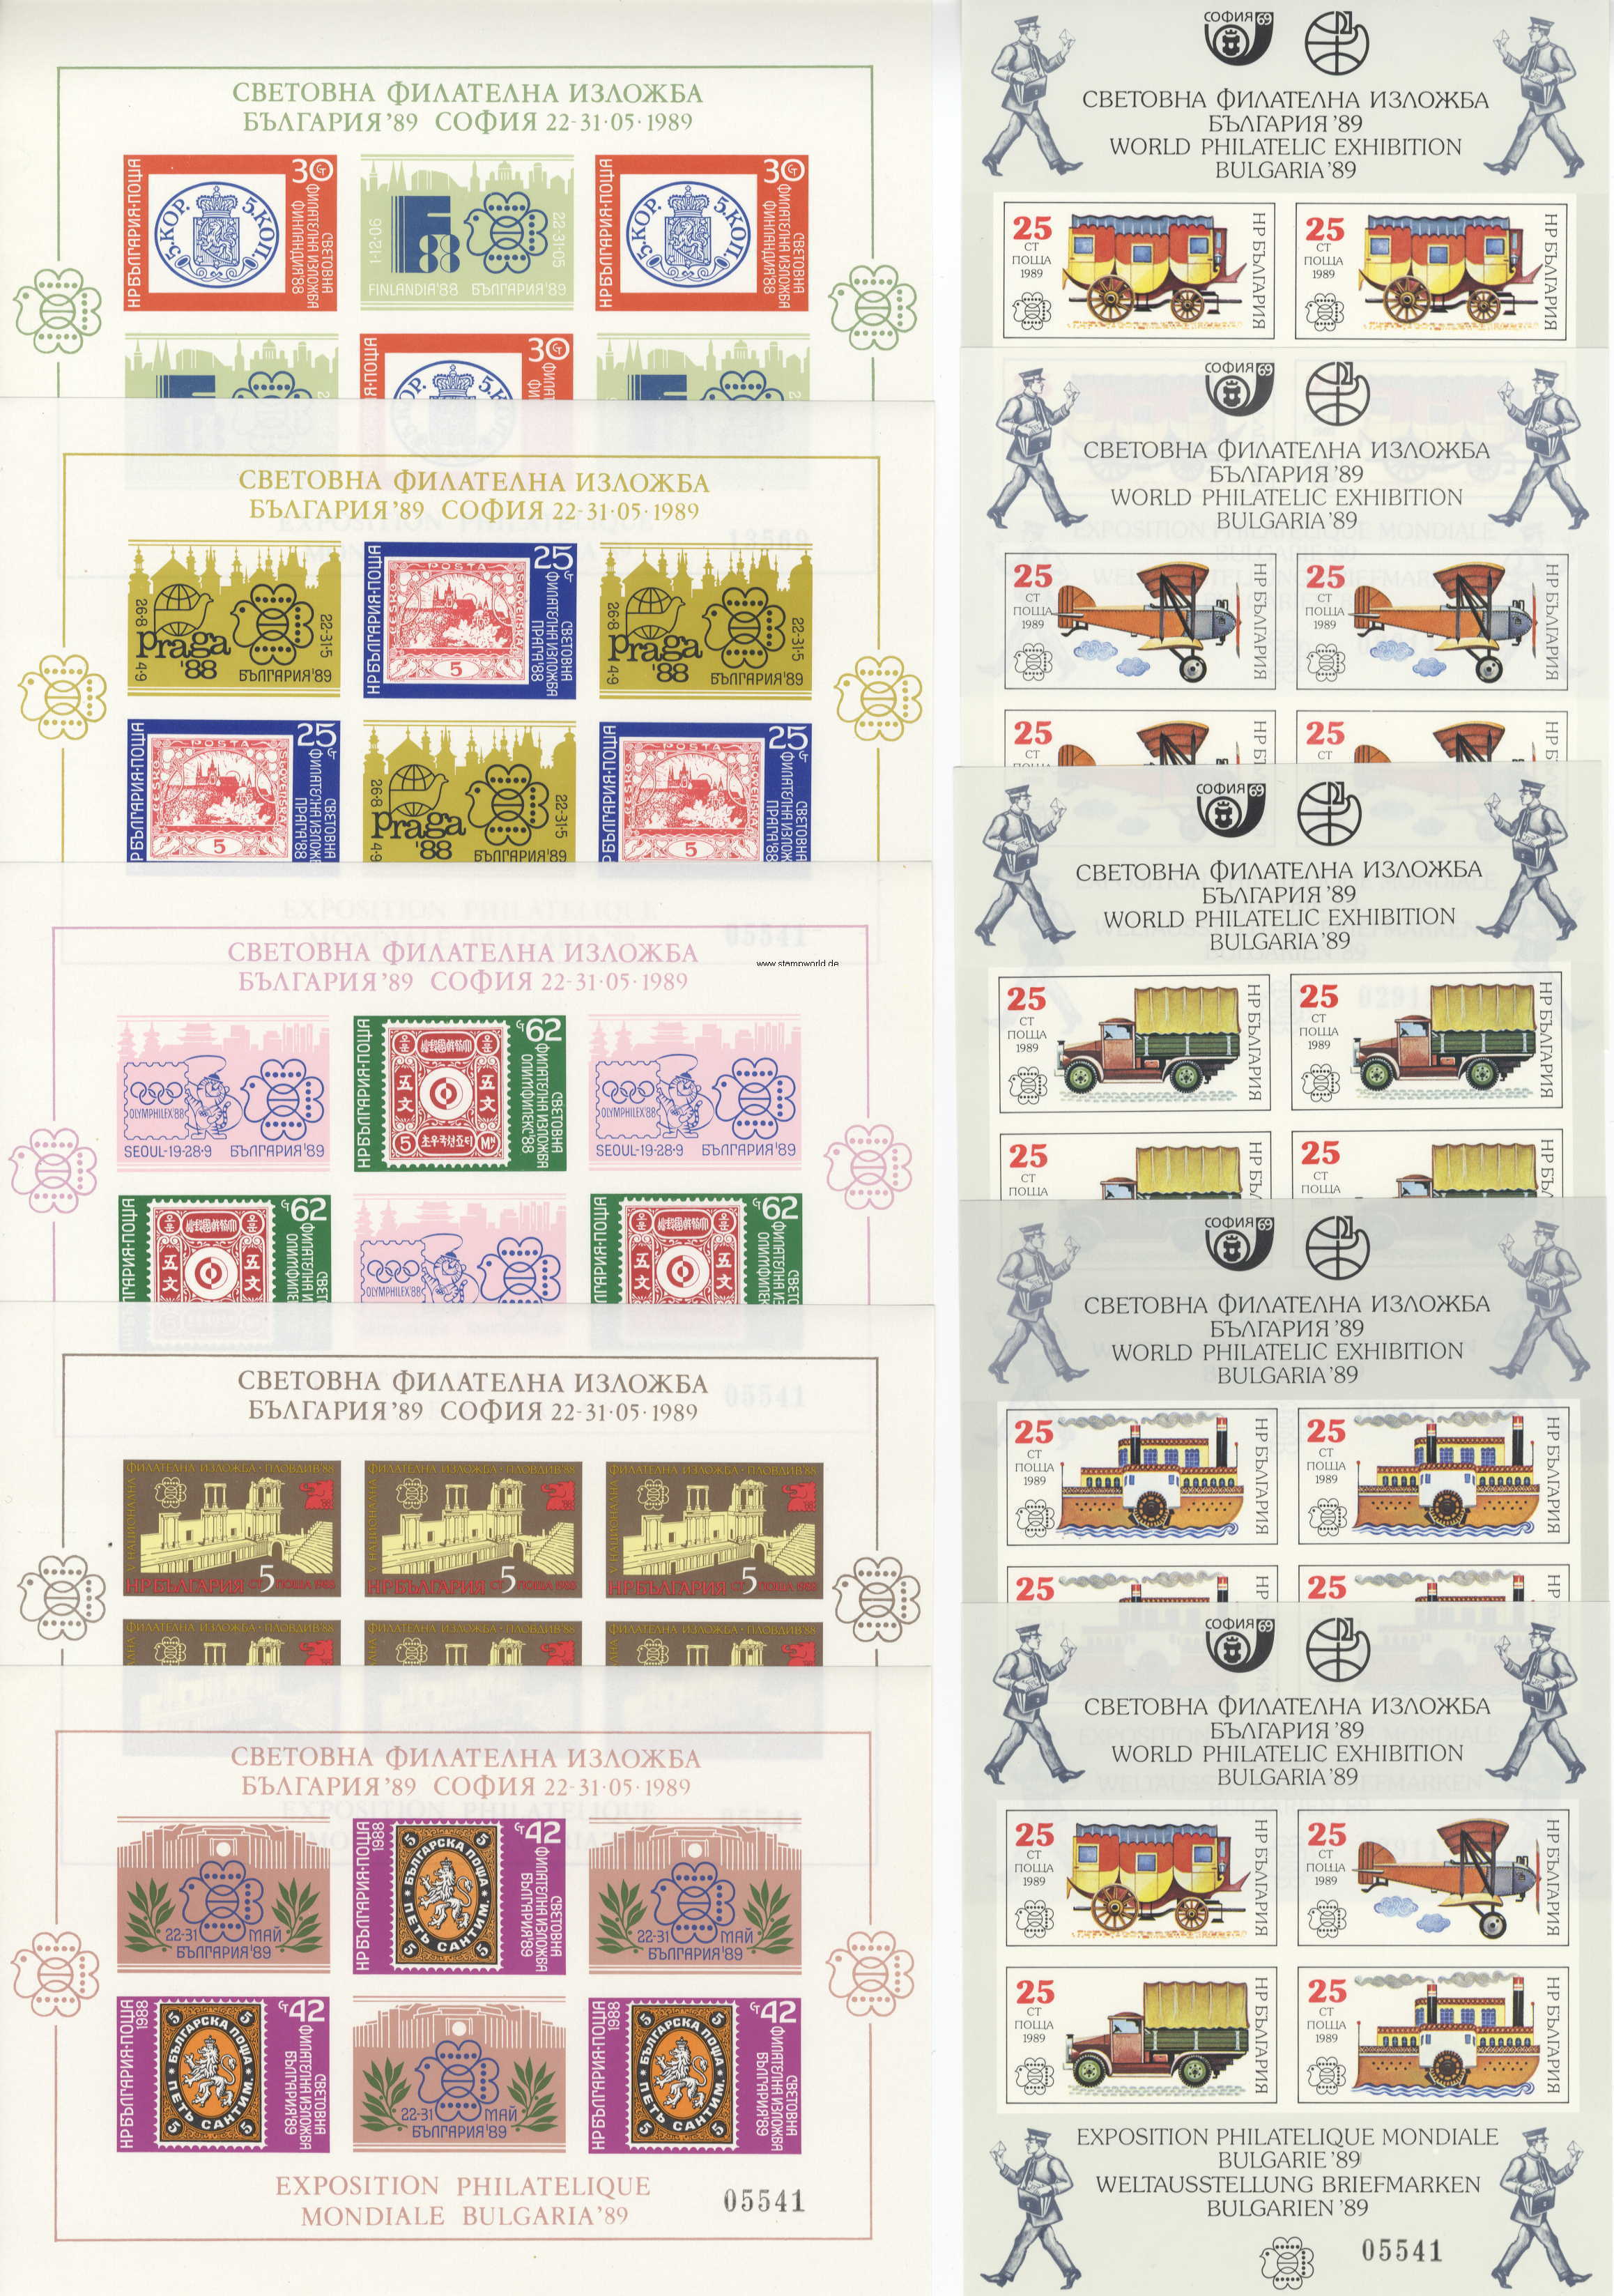 Briefmarken/Stamps BULGARIA 89/Wappen/Burg/Olympia/Tiger (Maskottchen)/Tauben stilis./Flugzeug/Postkutsche/LKW/Schiff